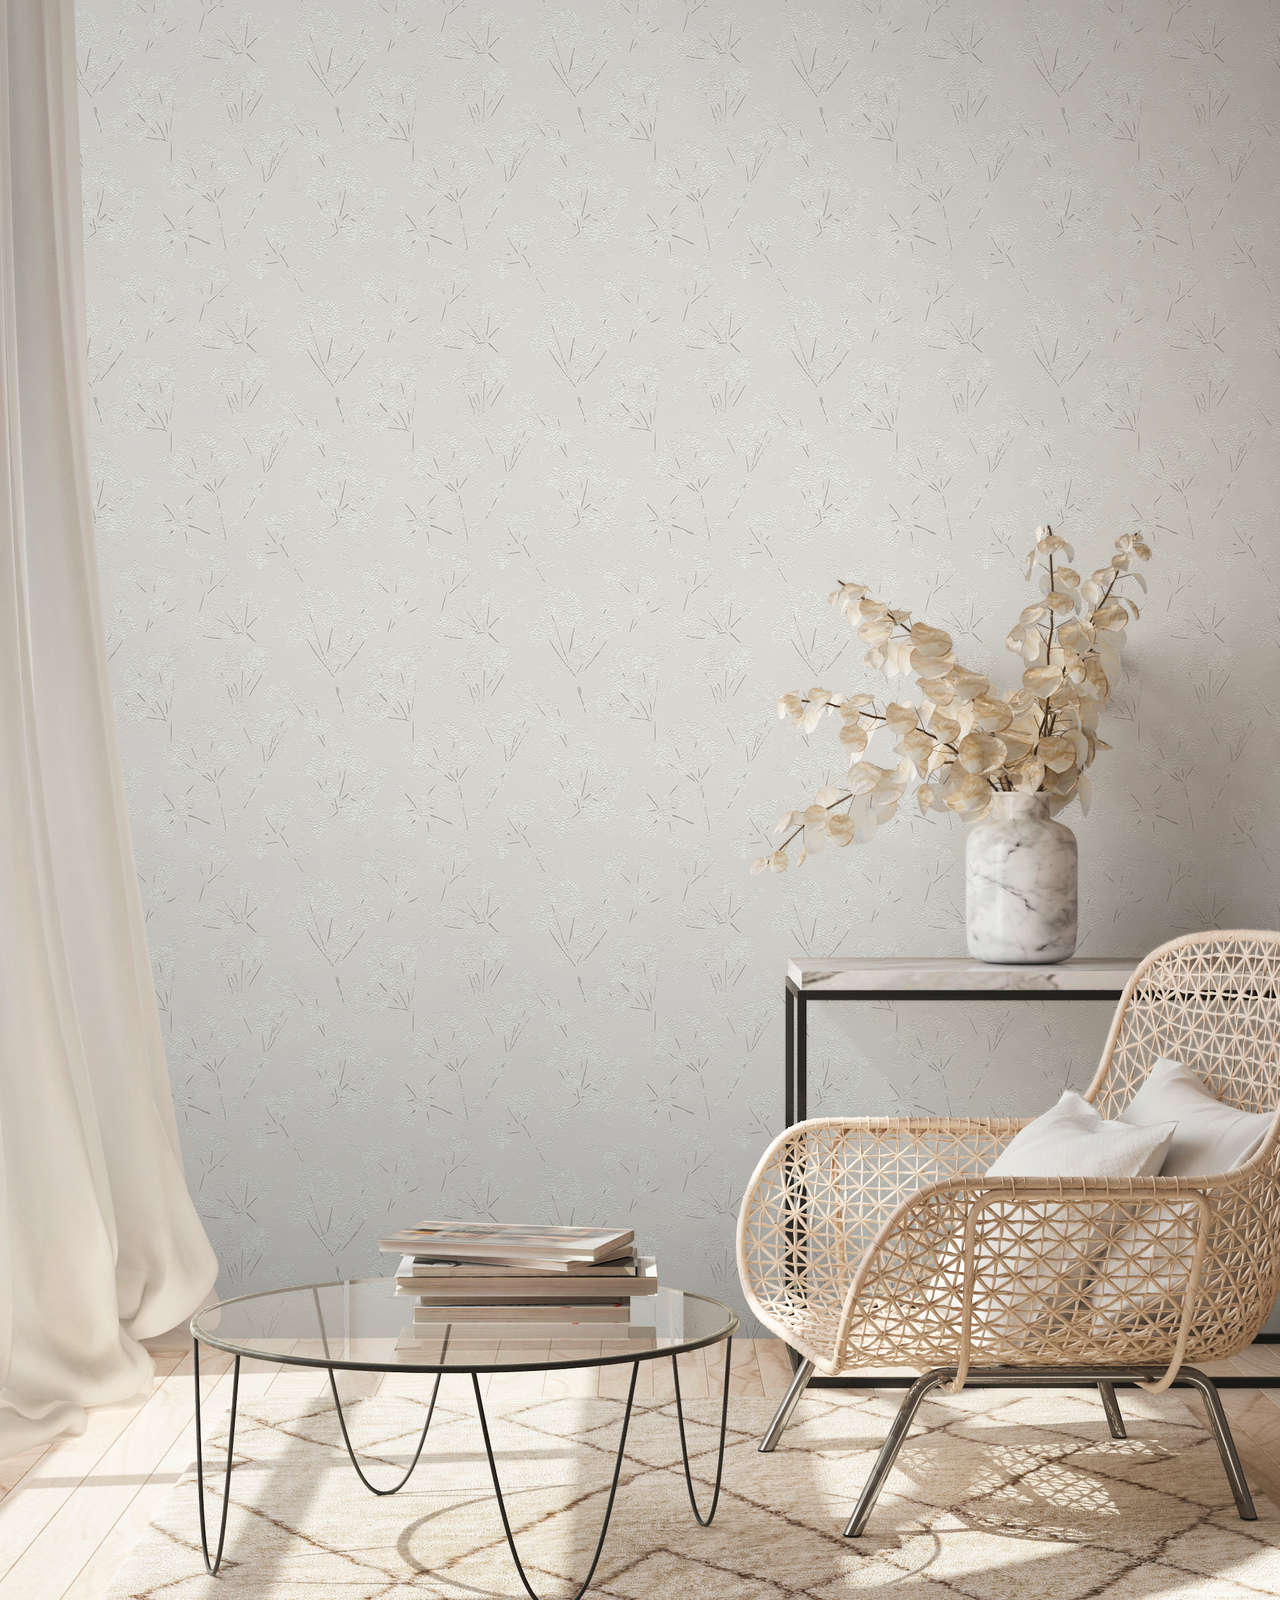             Papel pintado no tejido con motivo floral abstracto - gris, blanco
        